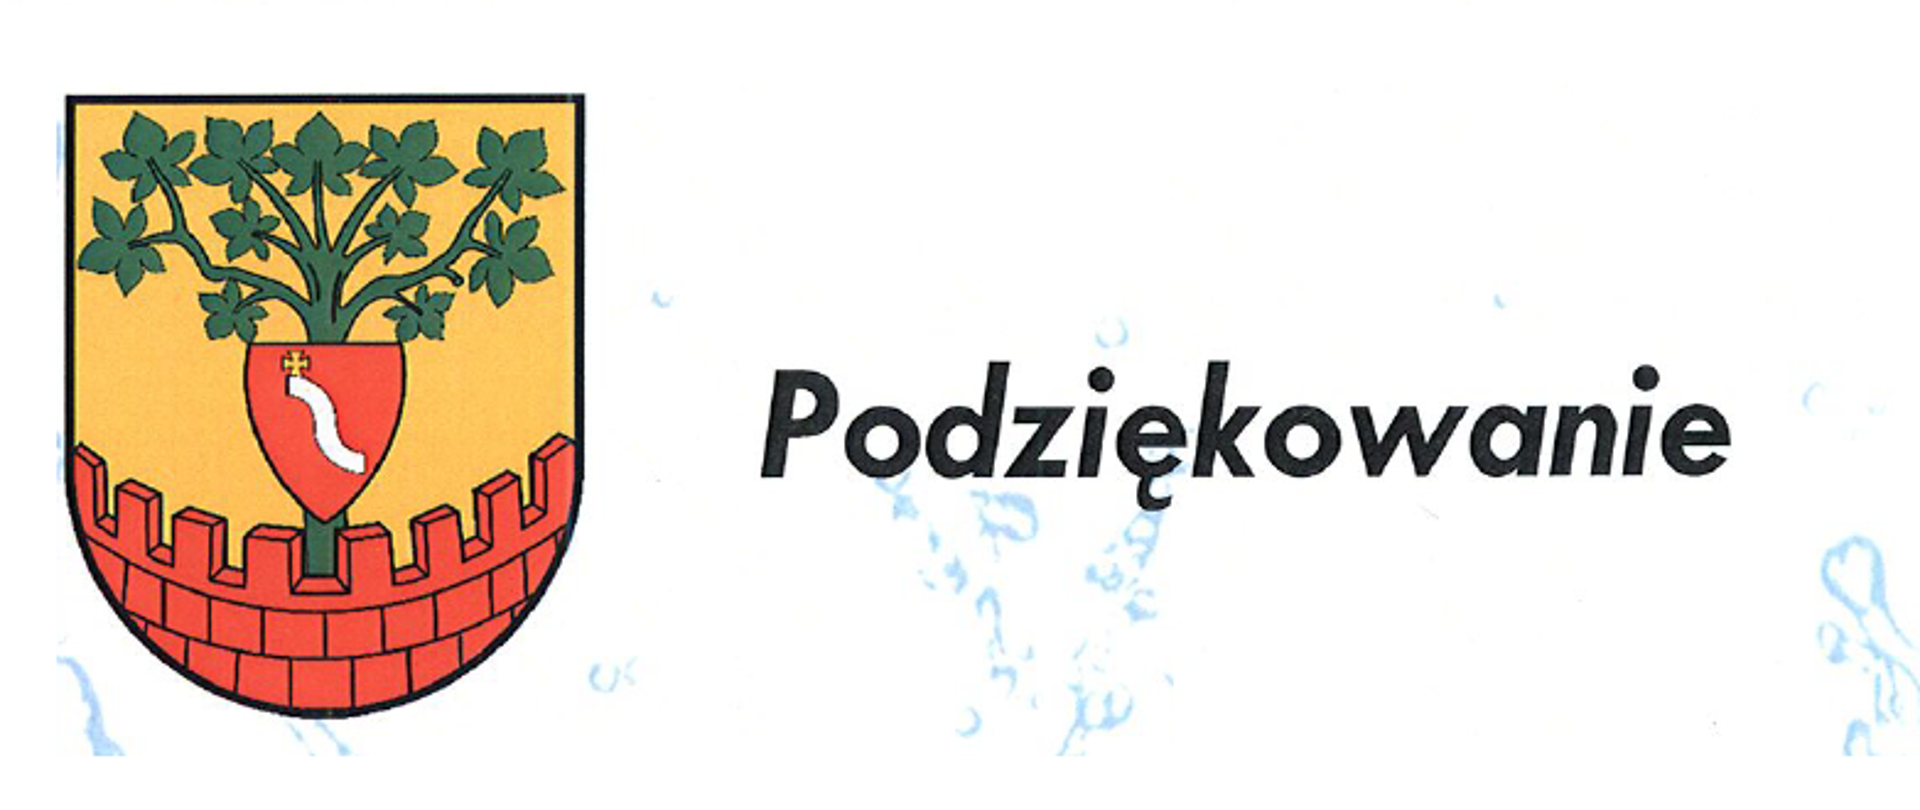 Zdjęcie przedstawia po swojej lewej stronie herb gminy Jawornik Polski a w części środkowej napis Podziękowanie. Całość znajduje się na białym tle na którym w sposób nieregularny pojawiają się błękitne wzory.